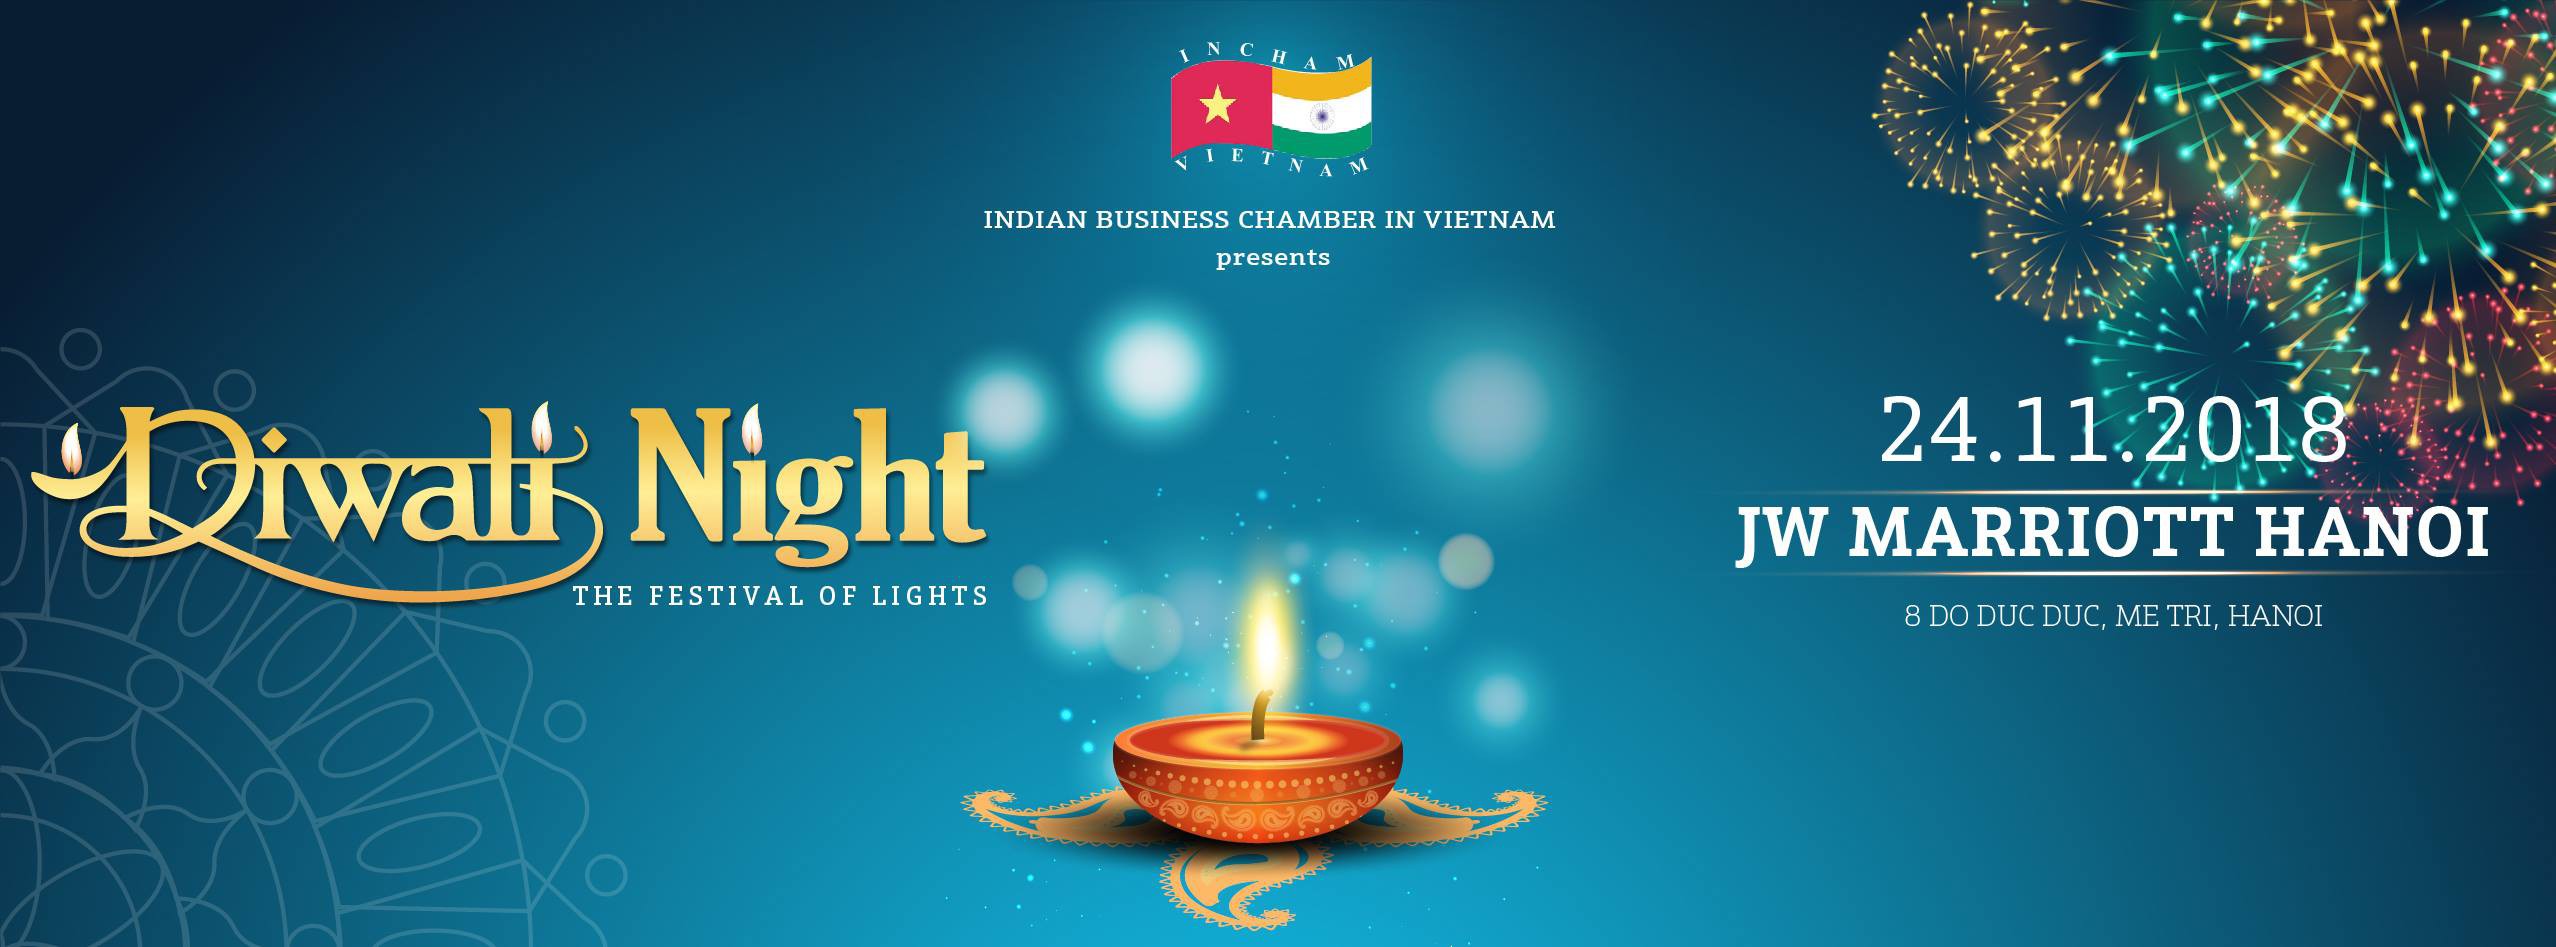 Lễ hội ánh sáng - DIWALI 2018 tại Hà Nội